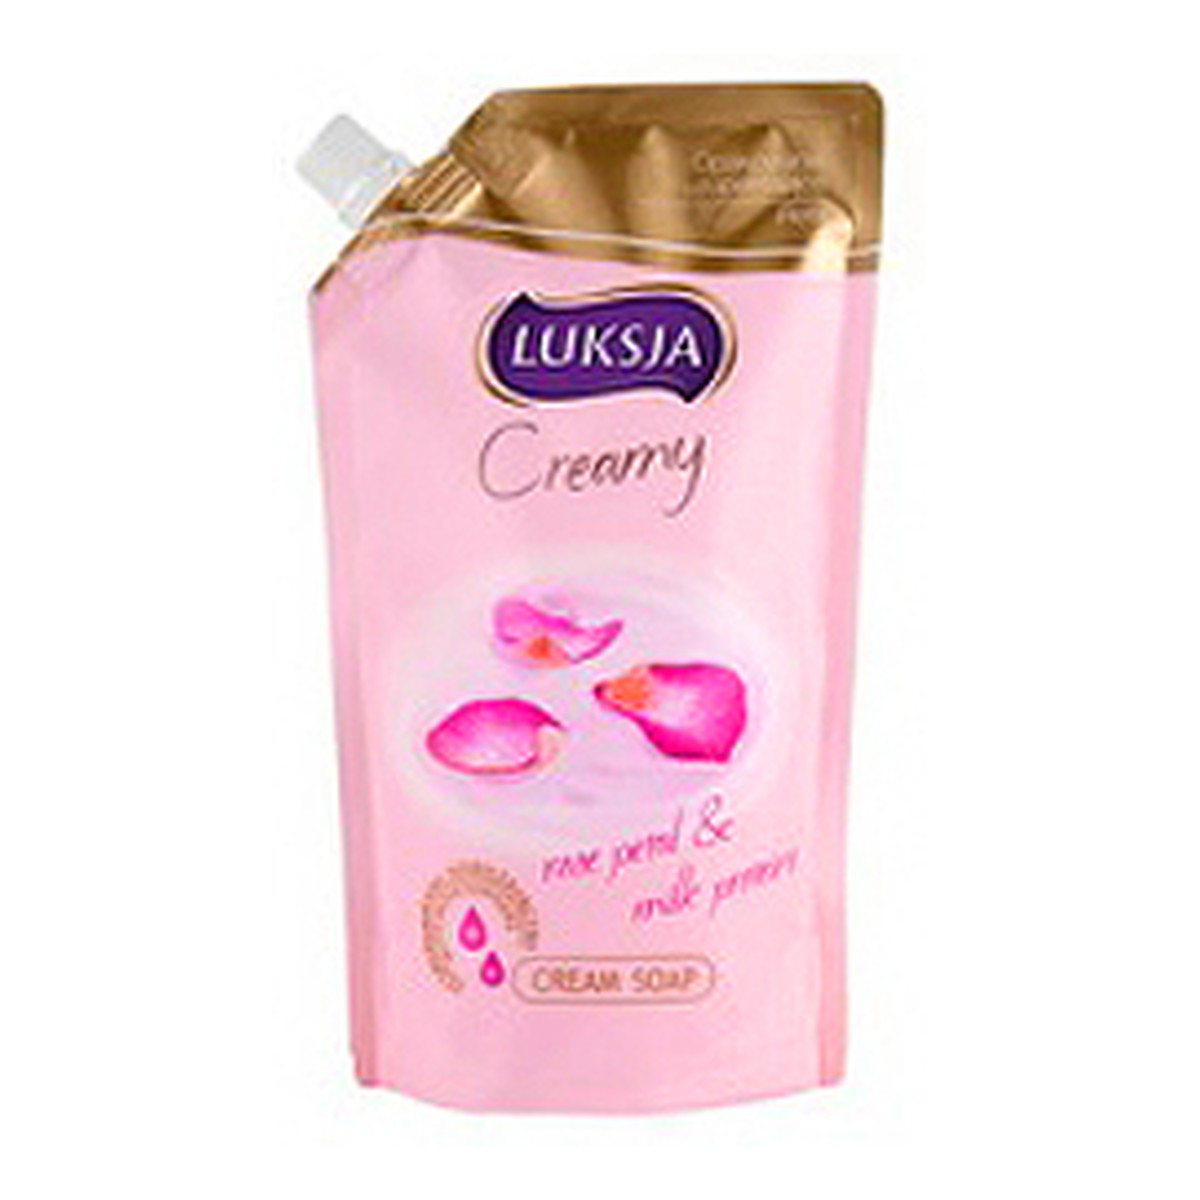 Luksja Creamy Mydło w Płynie Rose Petal & Milk Proteins Uzupełnienie 400ml